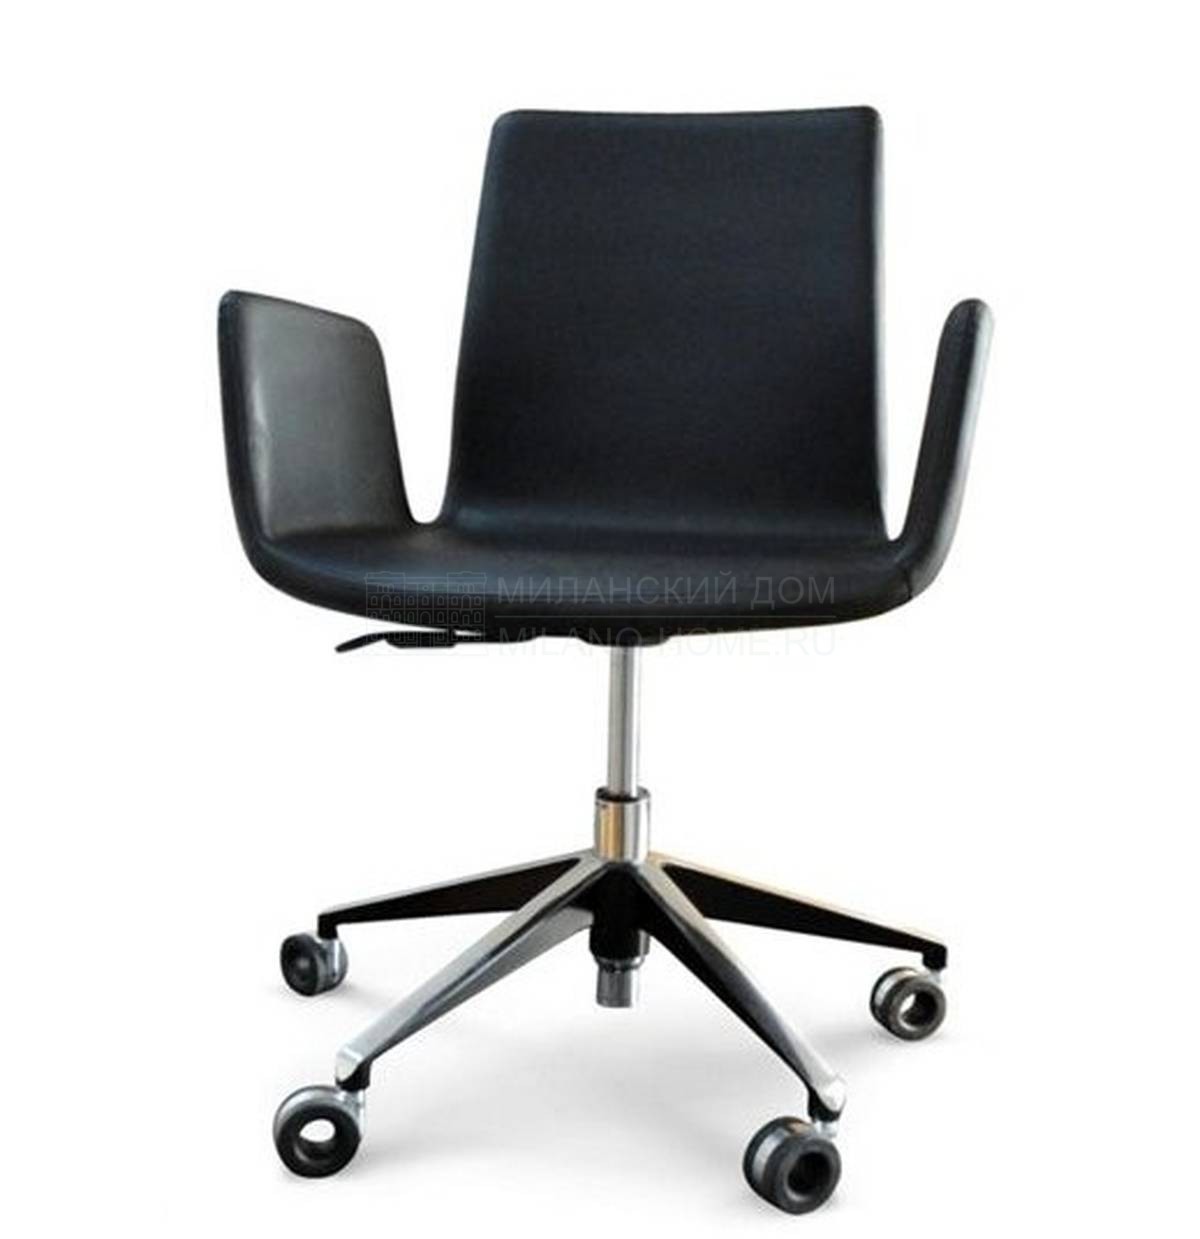 Кожаное кресло Furtif desk armchair из Франции фабрики ROCHE BOBOIS